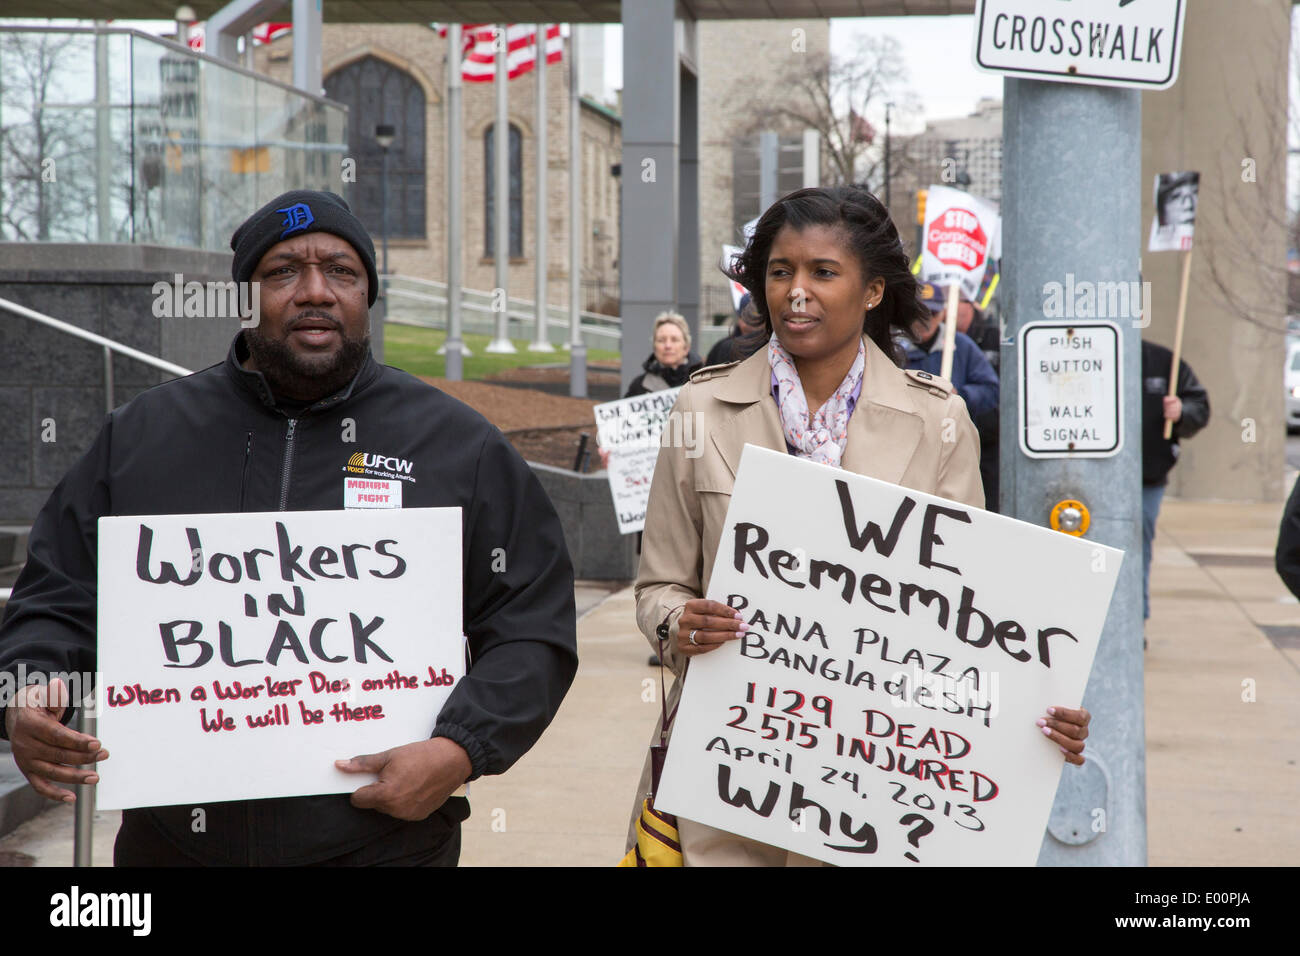 Detroit, Michigan USA - les membres de l'Union marque le Jour du souvenir des travailleurs en organisant une marche et manifestations silencieuse pour se souvenir des travailleurs tués au travail. Ils disent que des milliers de travailleurs meurent chaque année dans les lieux dangereux, et beaucoup d'autres de maladies professionnelles. Crédit : Jim West/Alamy Live News Banque D'Images